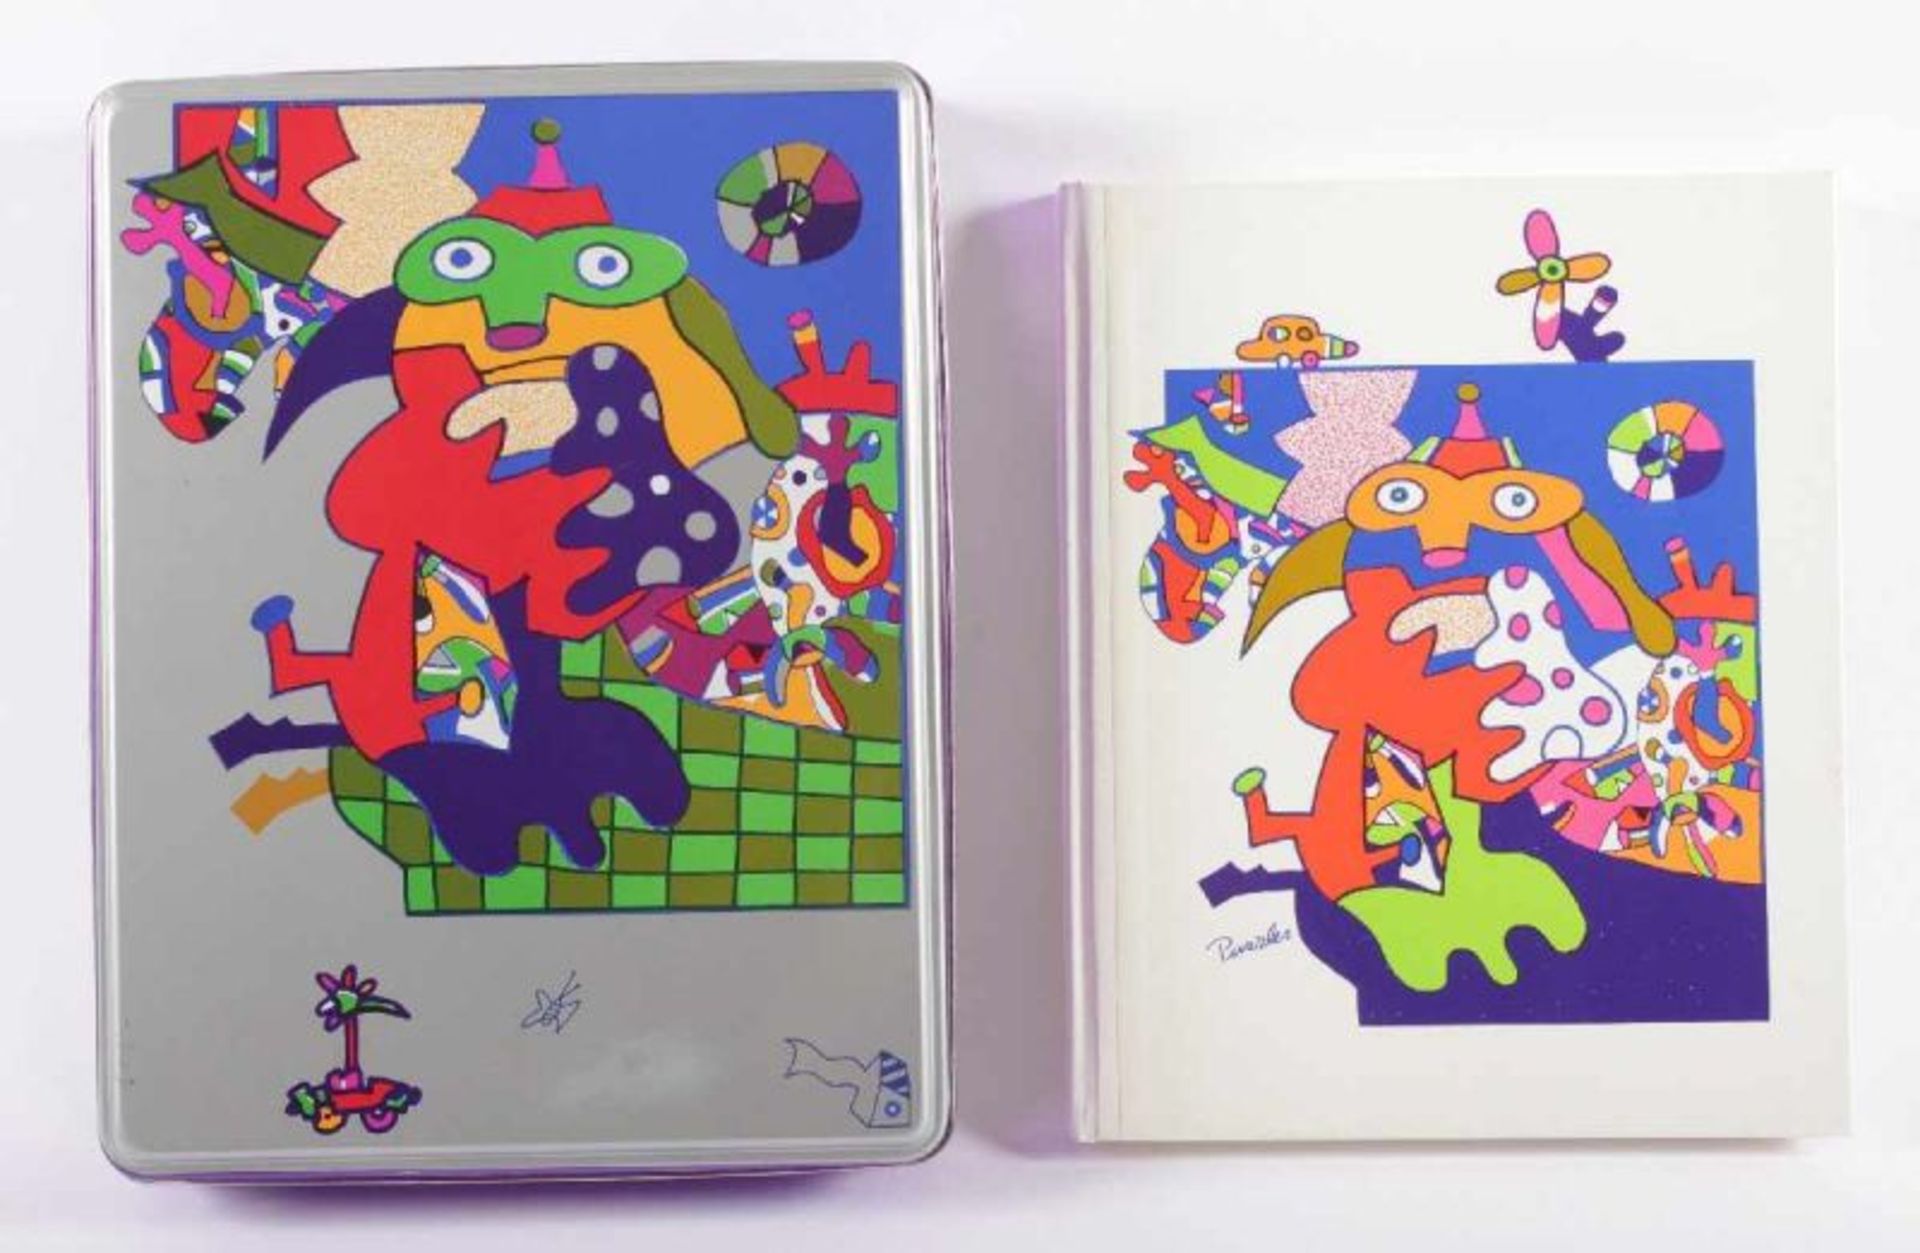 ALT, Otmar, "Otmar Art - Puzzles", Buchband in bunter Schmuck-Kassette, Edition elefant-Art,